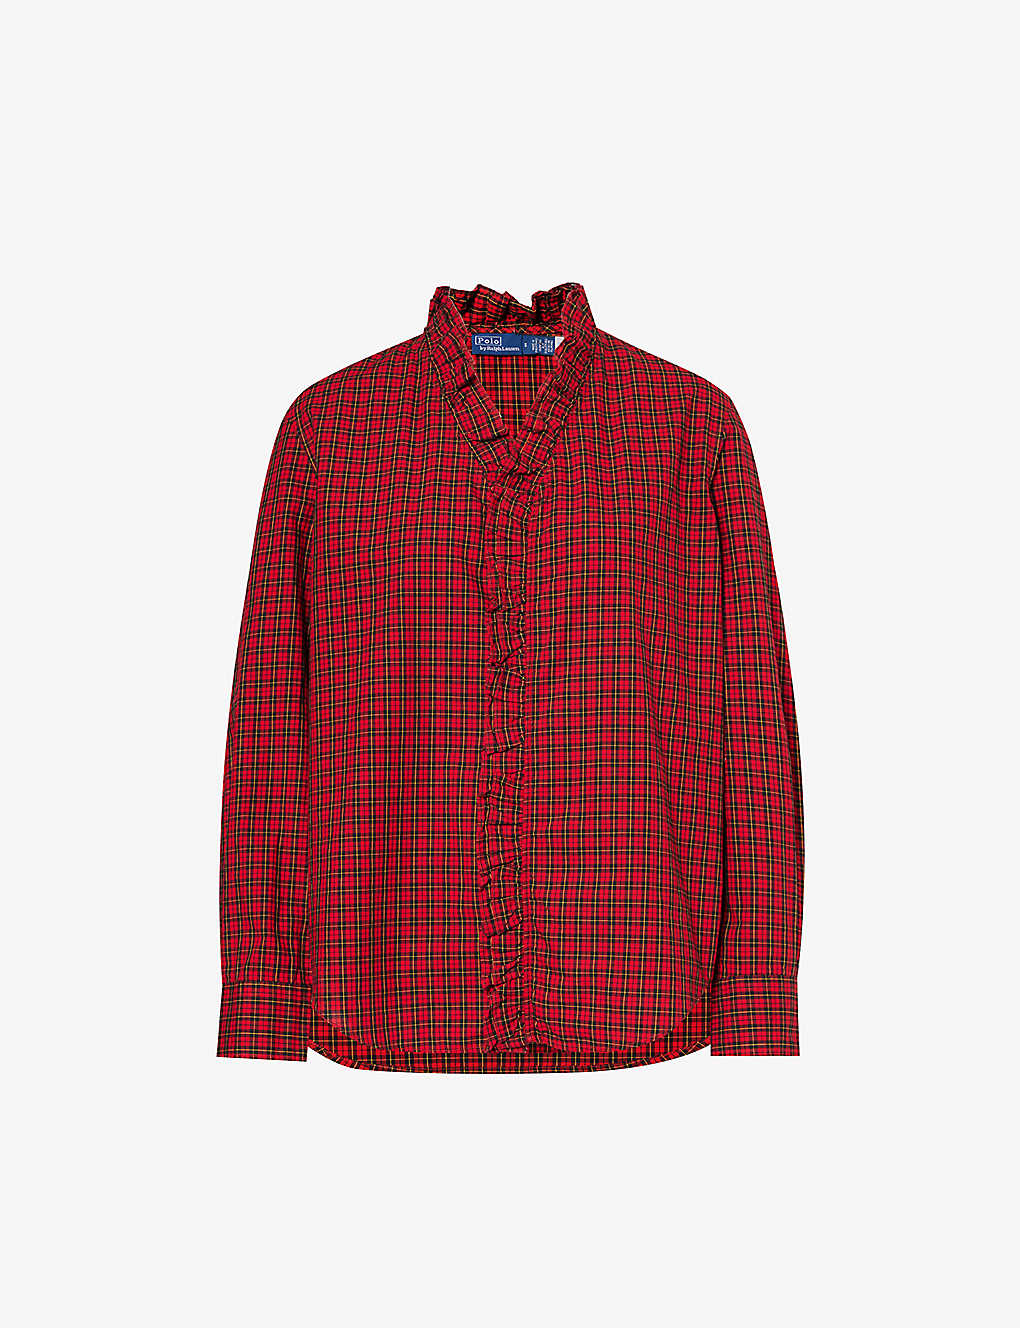 Polo Ralph Lauren Womens 801a Red Black Multi Regular-fit Cotton Shirt